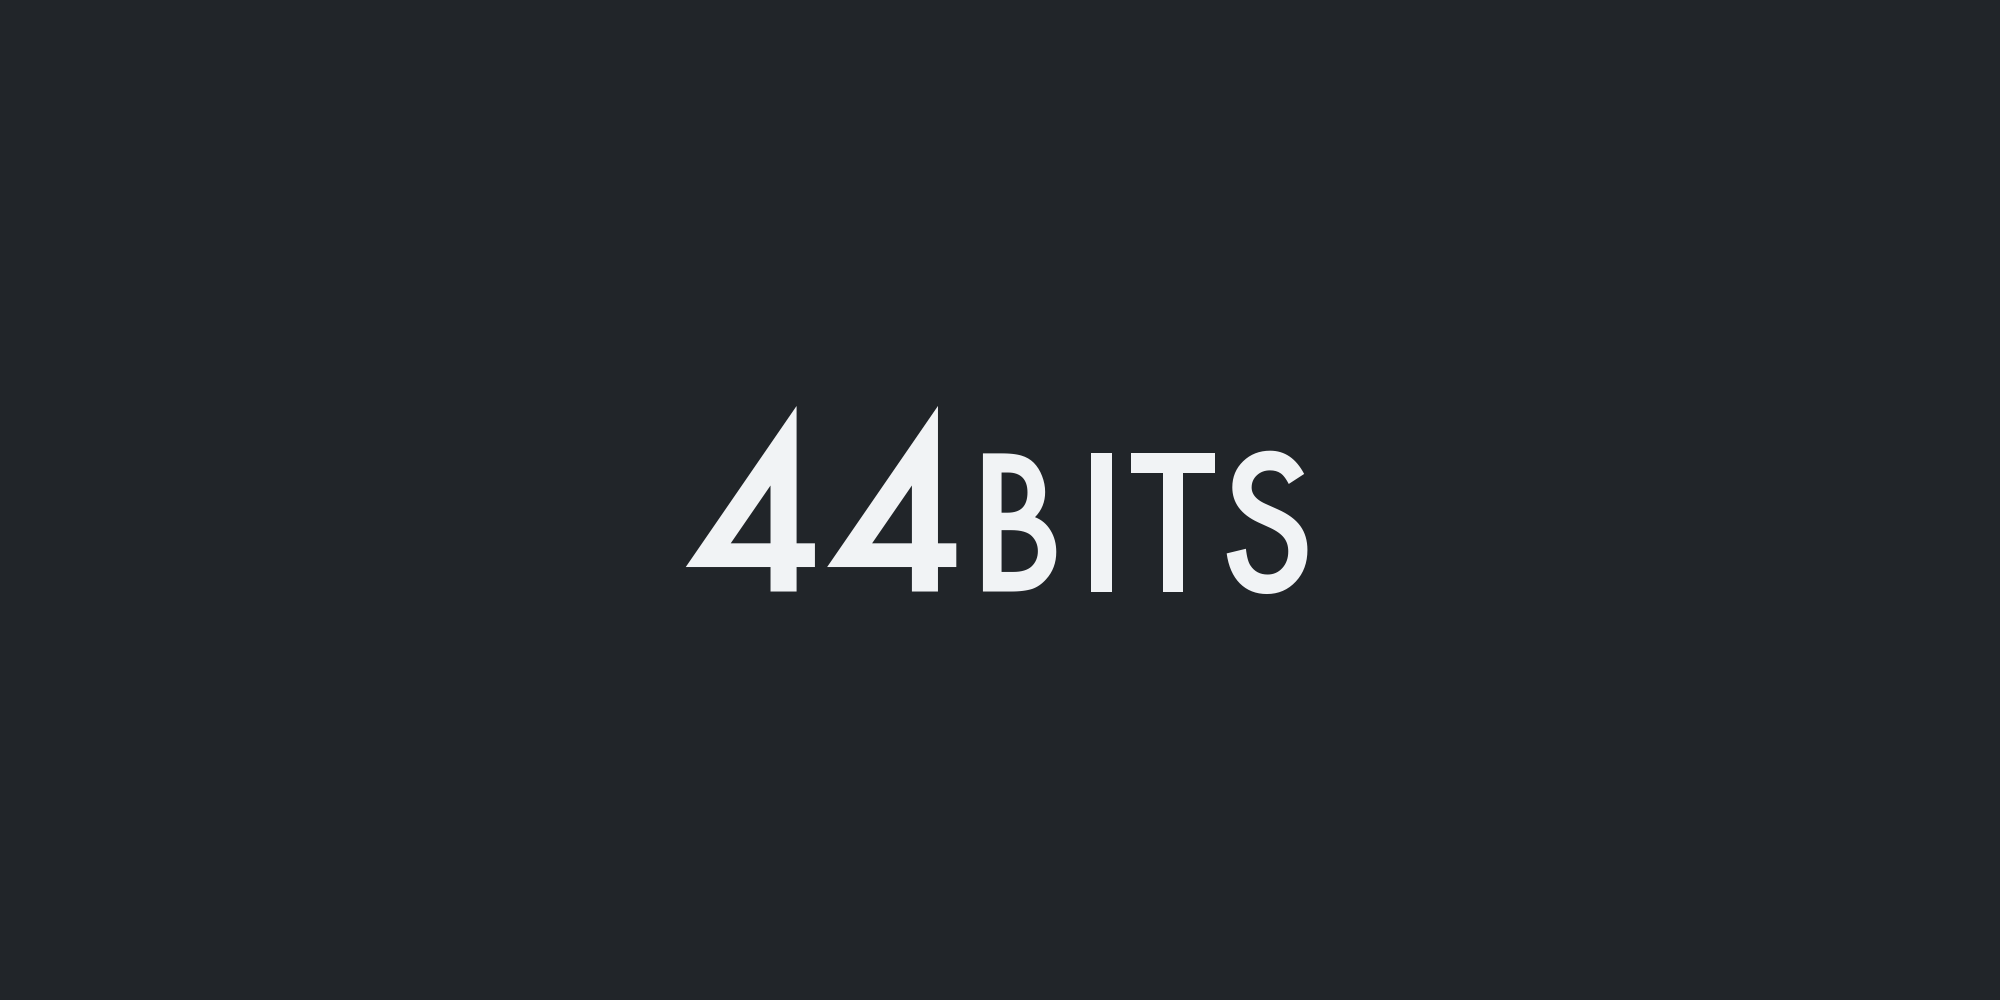 44BITS 로고